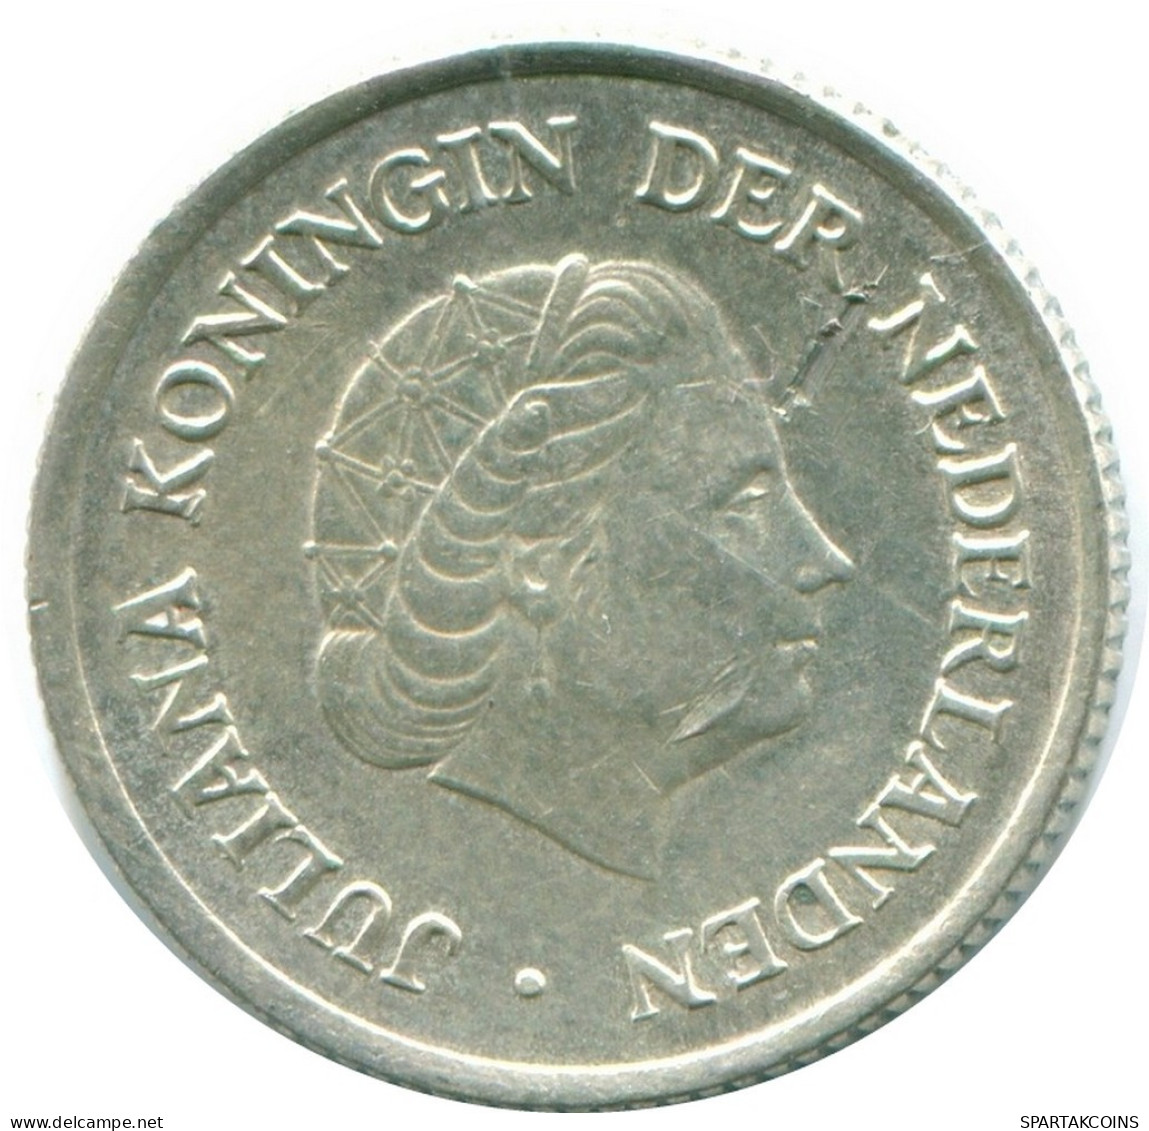 1/4 GULDEN 1954 NIEDERLÄNDISCHE ANTILLEN SILBER Koloniale Münze #NL10848.4.D.A - Niederländische Antillen